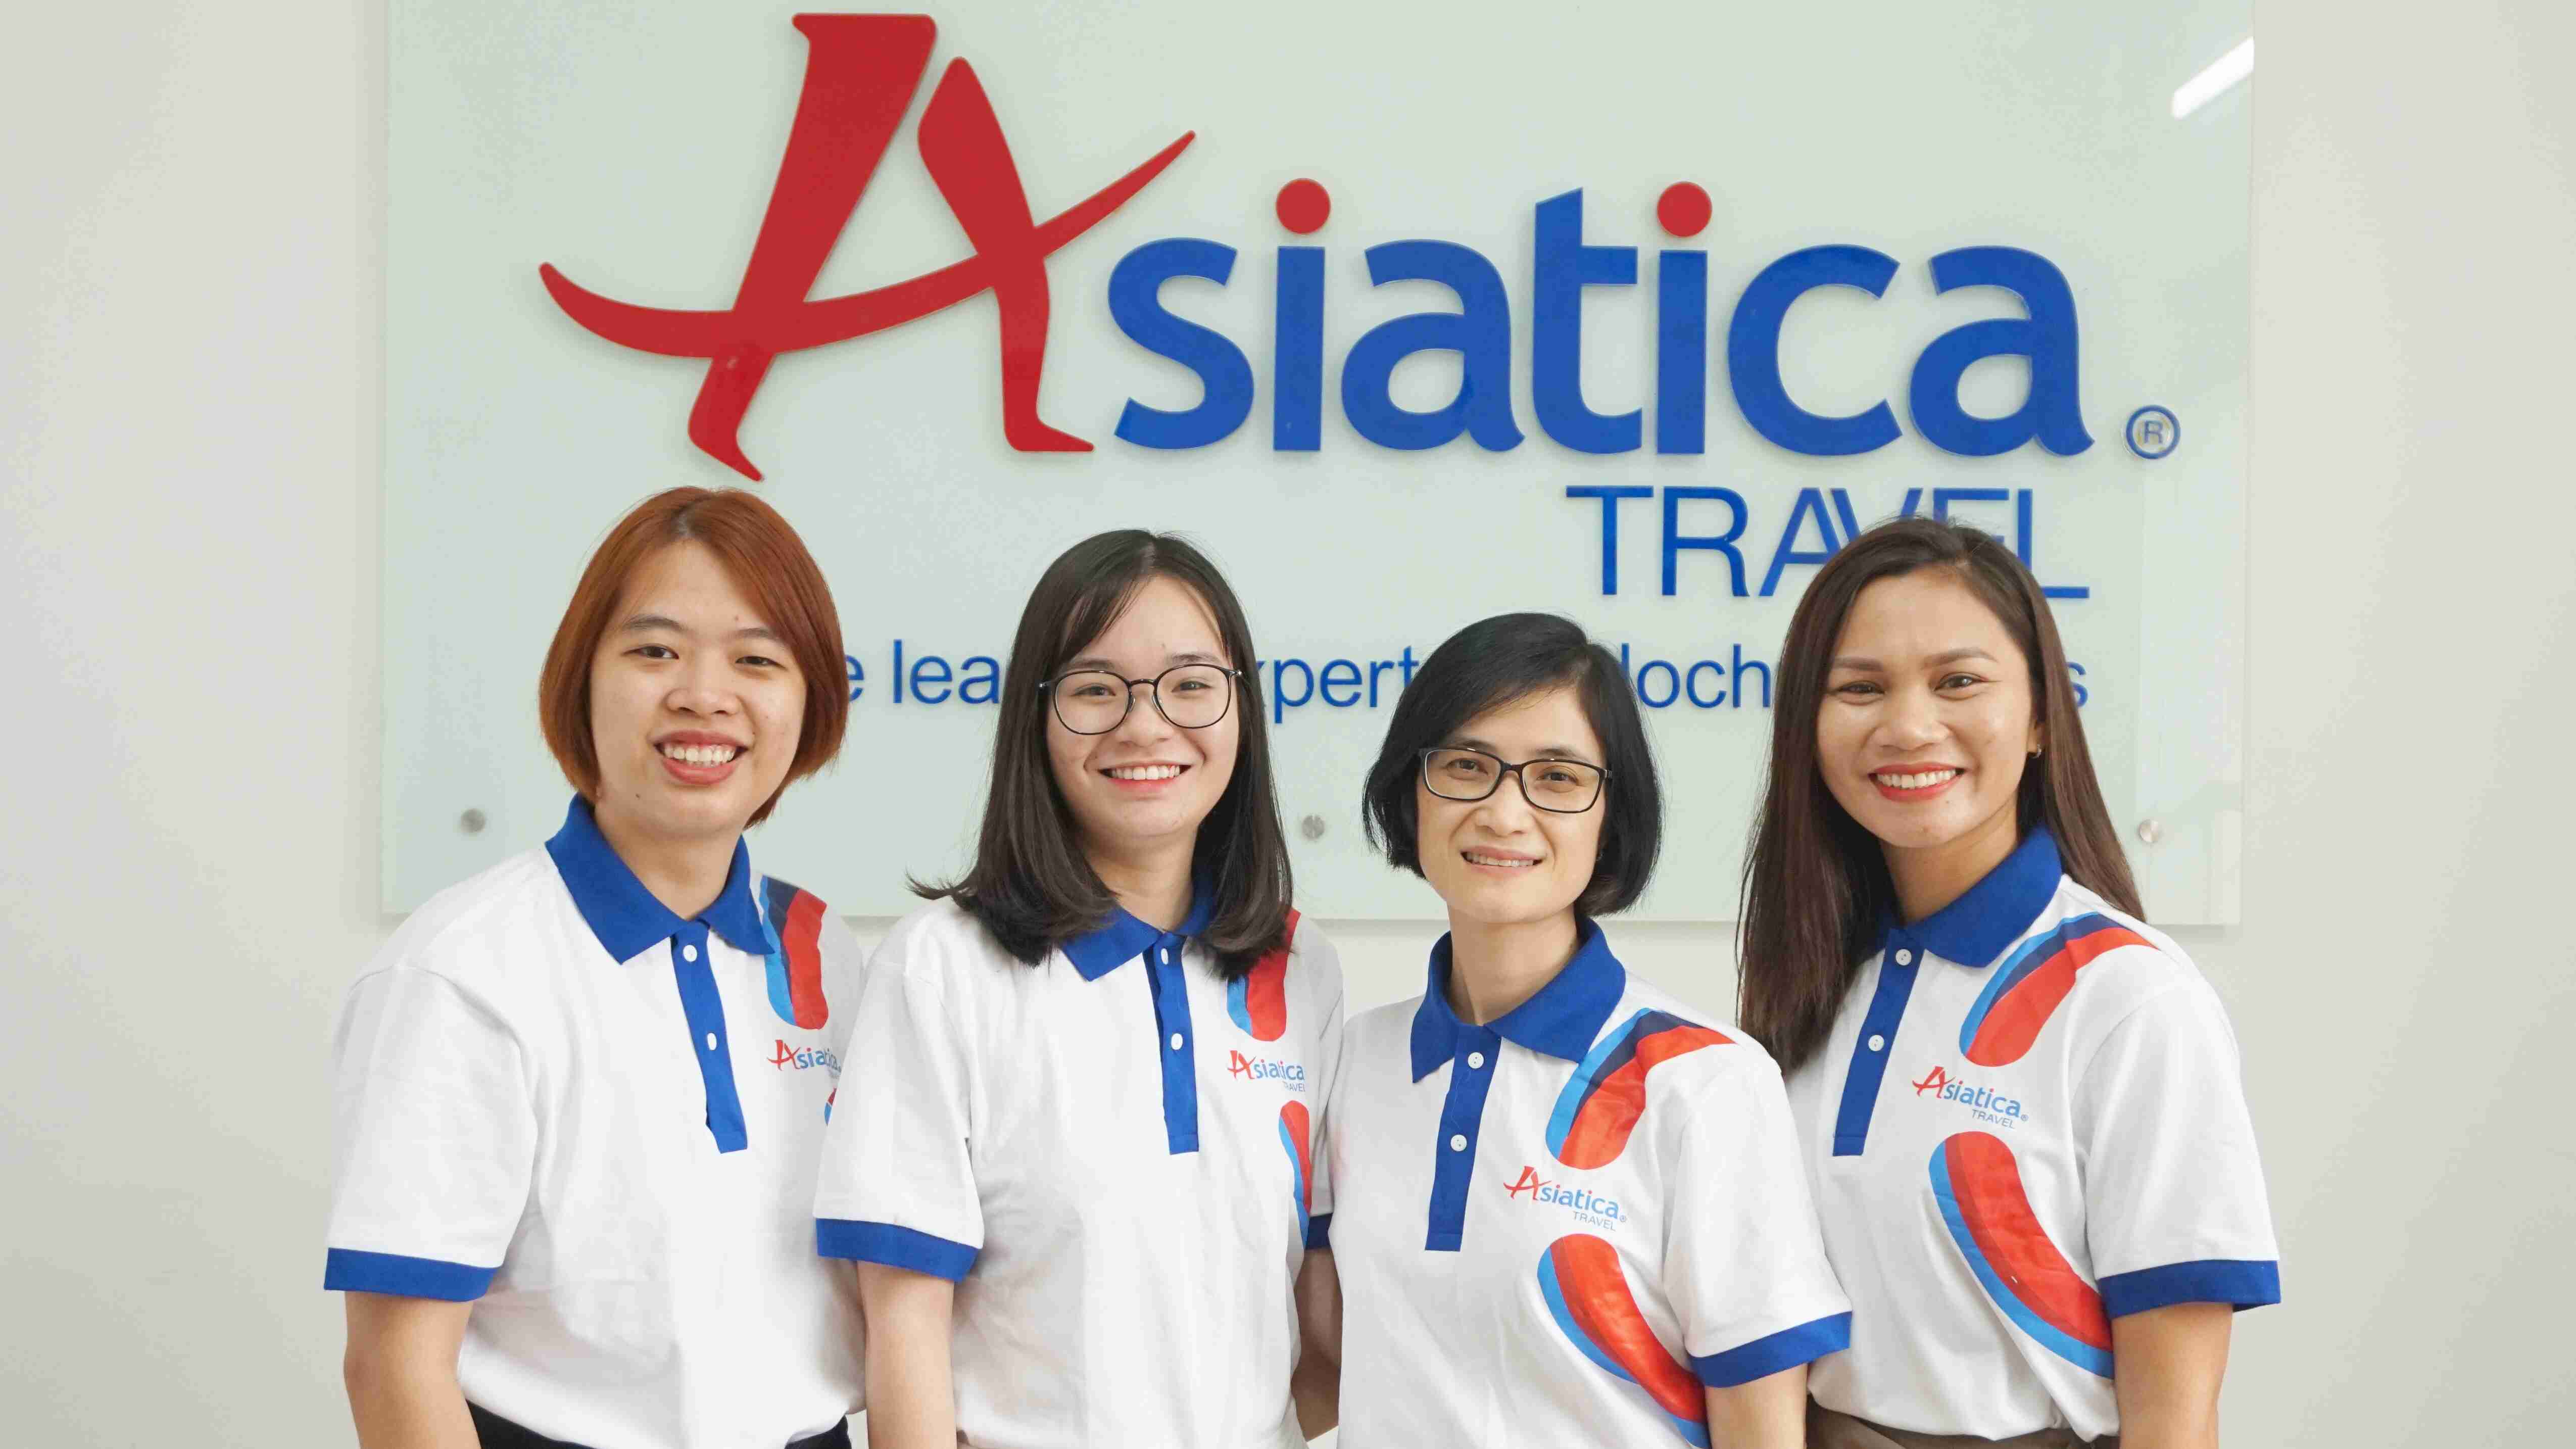 Asiatica Travel Team